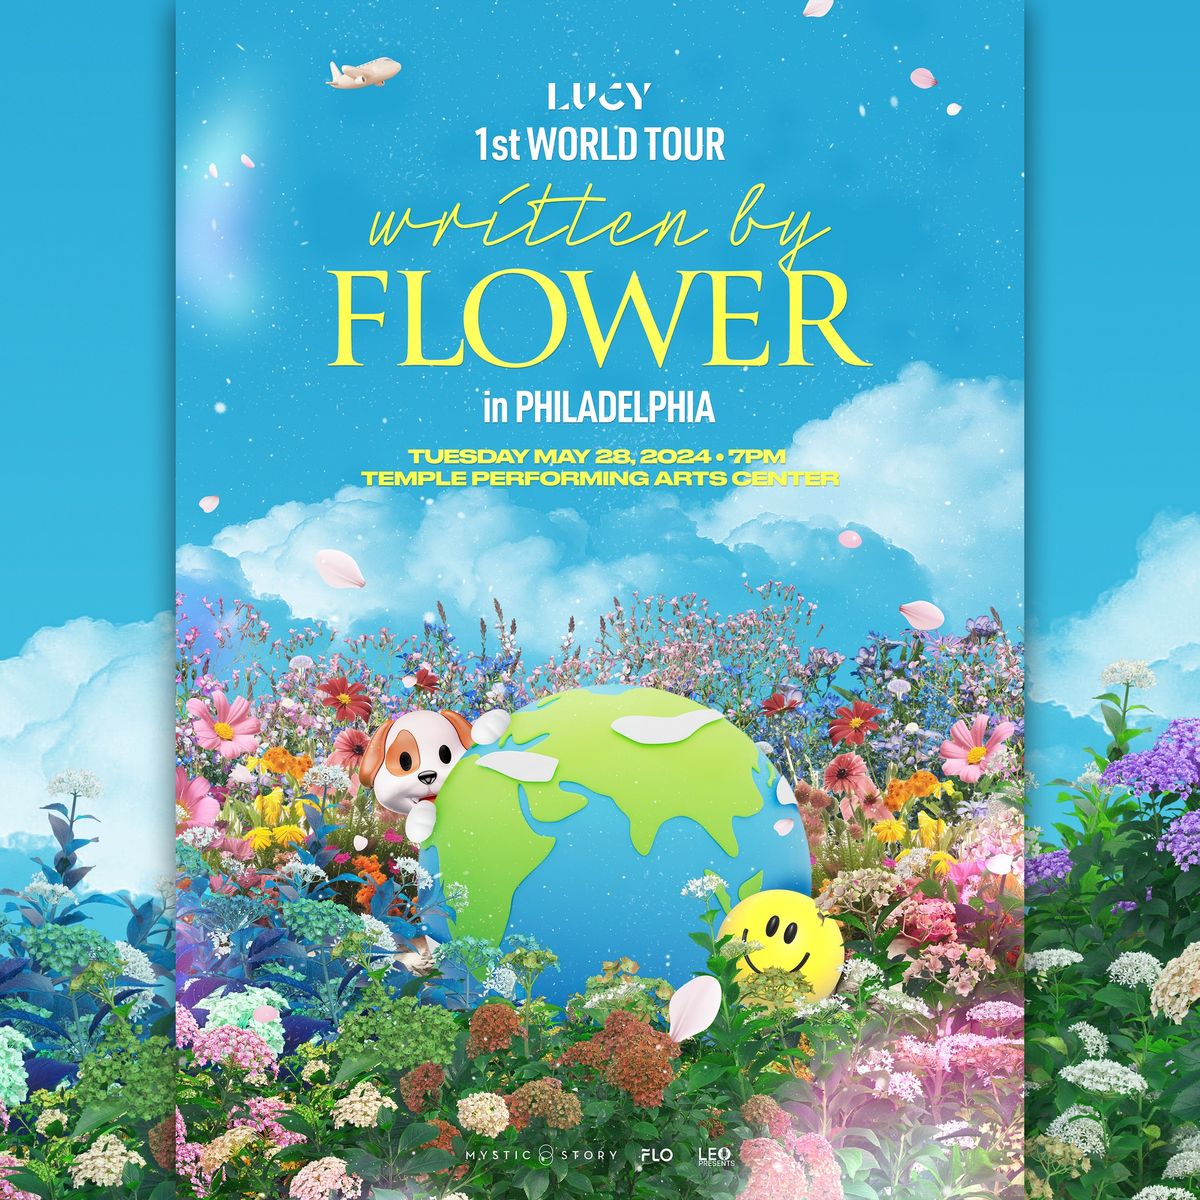 LUCY - 1st World Tour 'written by FLOWER' in Philadelphia